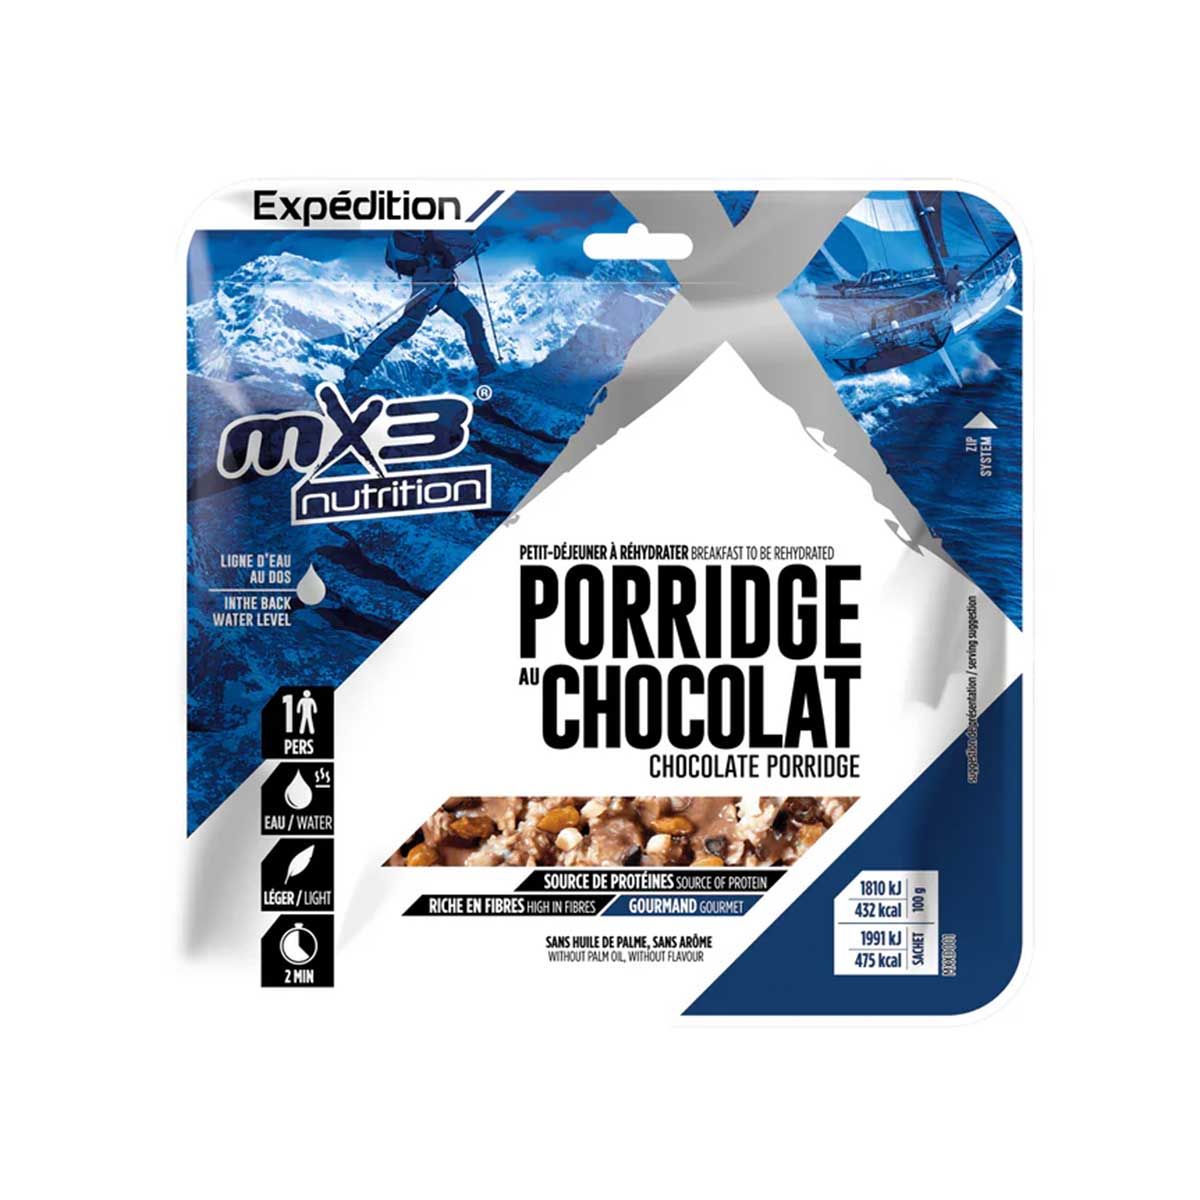 Porridge au chocolat